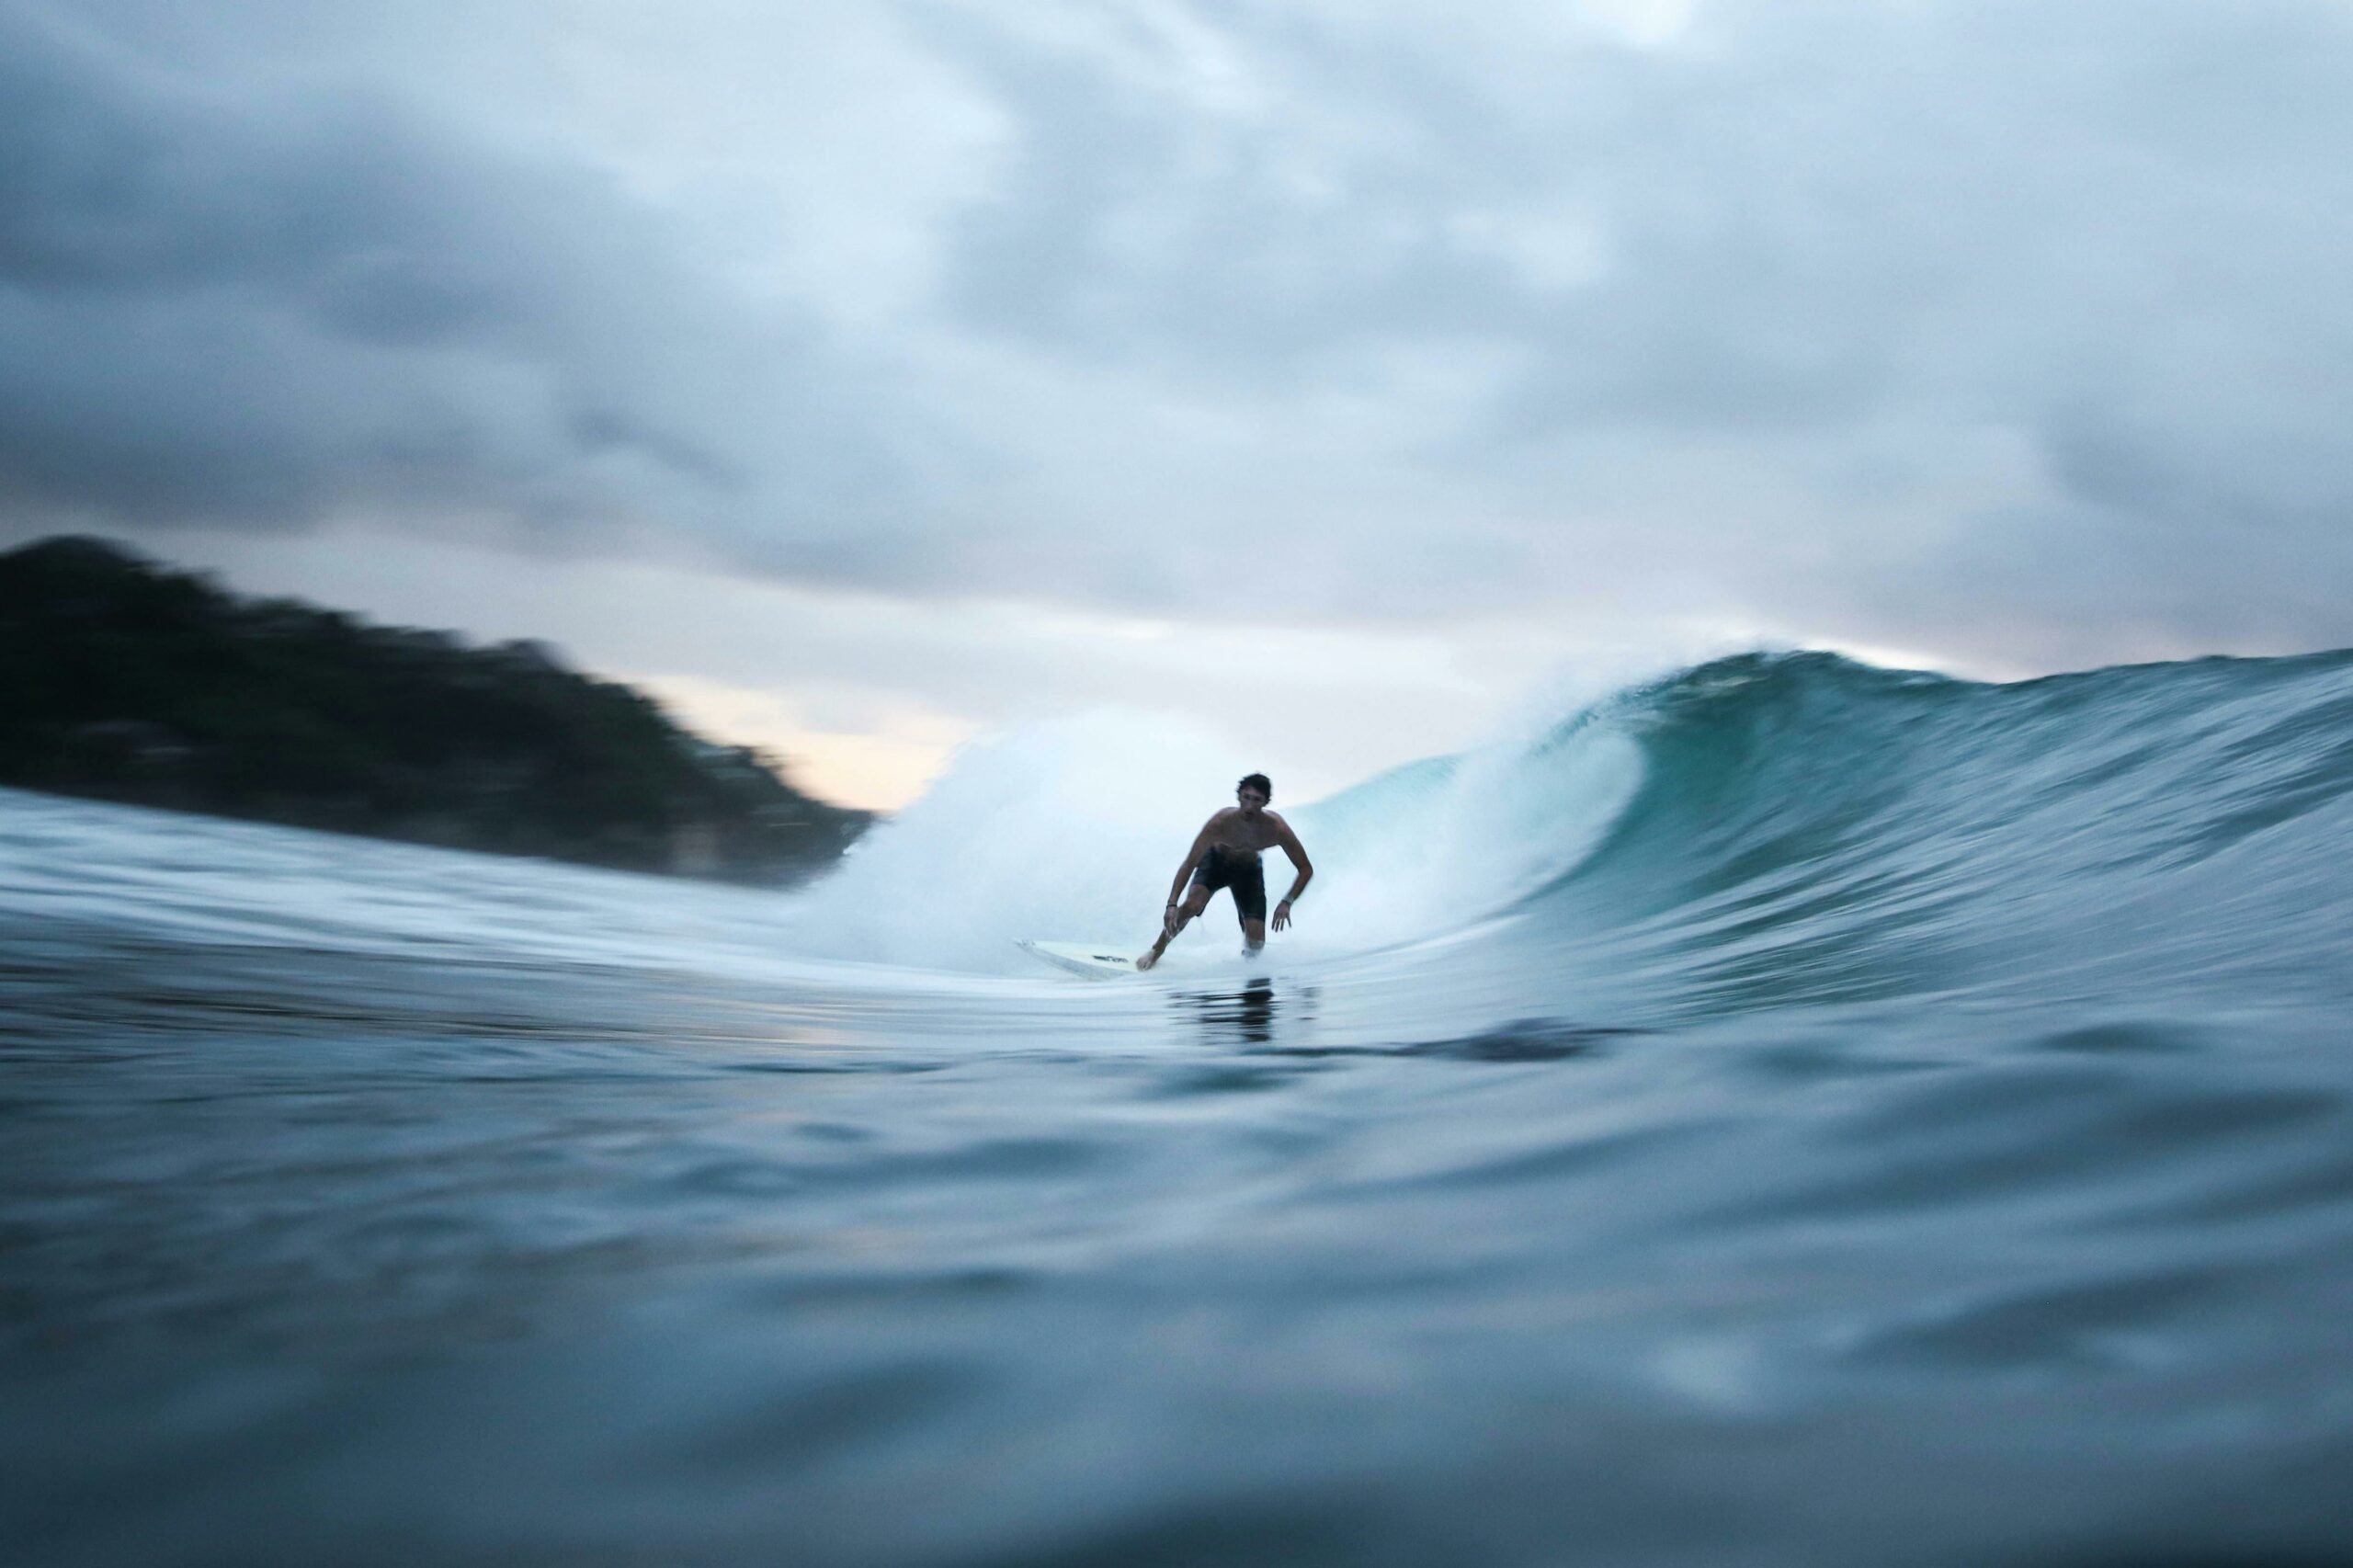 Planche de Surf “Made in China” : bonne ou mauvaise idée ?